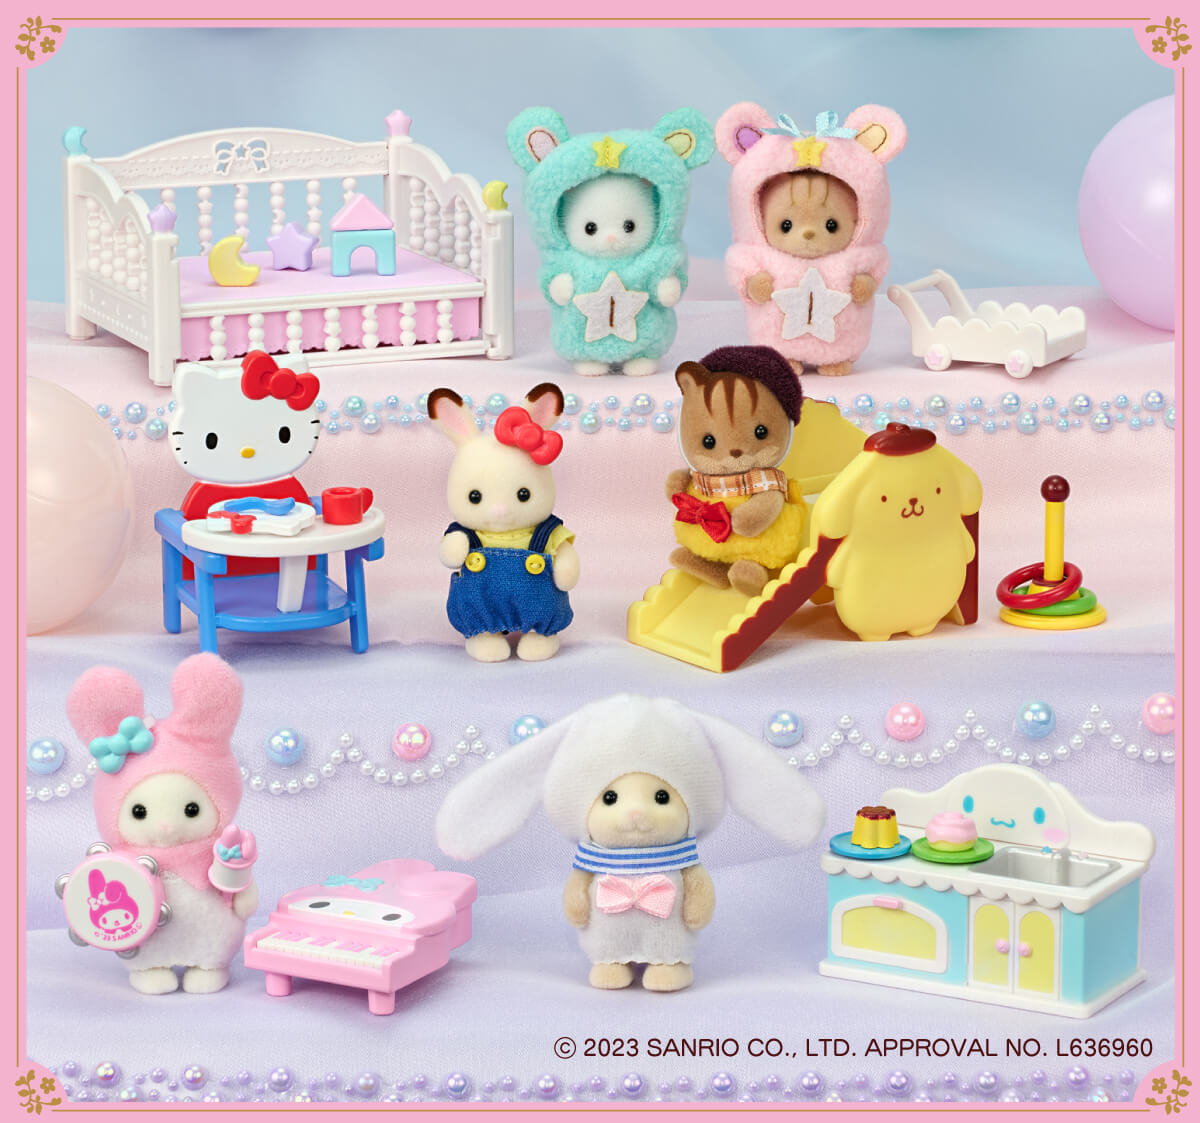 おもちゃ/ぬいぐるみシルバニアファミリー × サンリオキャラクターズ 赤ちゃんとなかよし家具セット